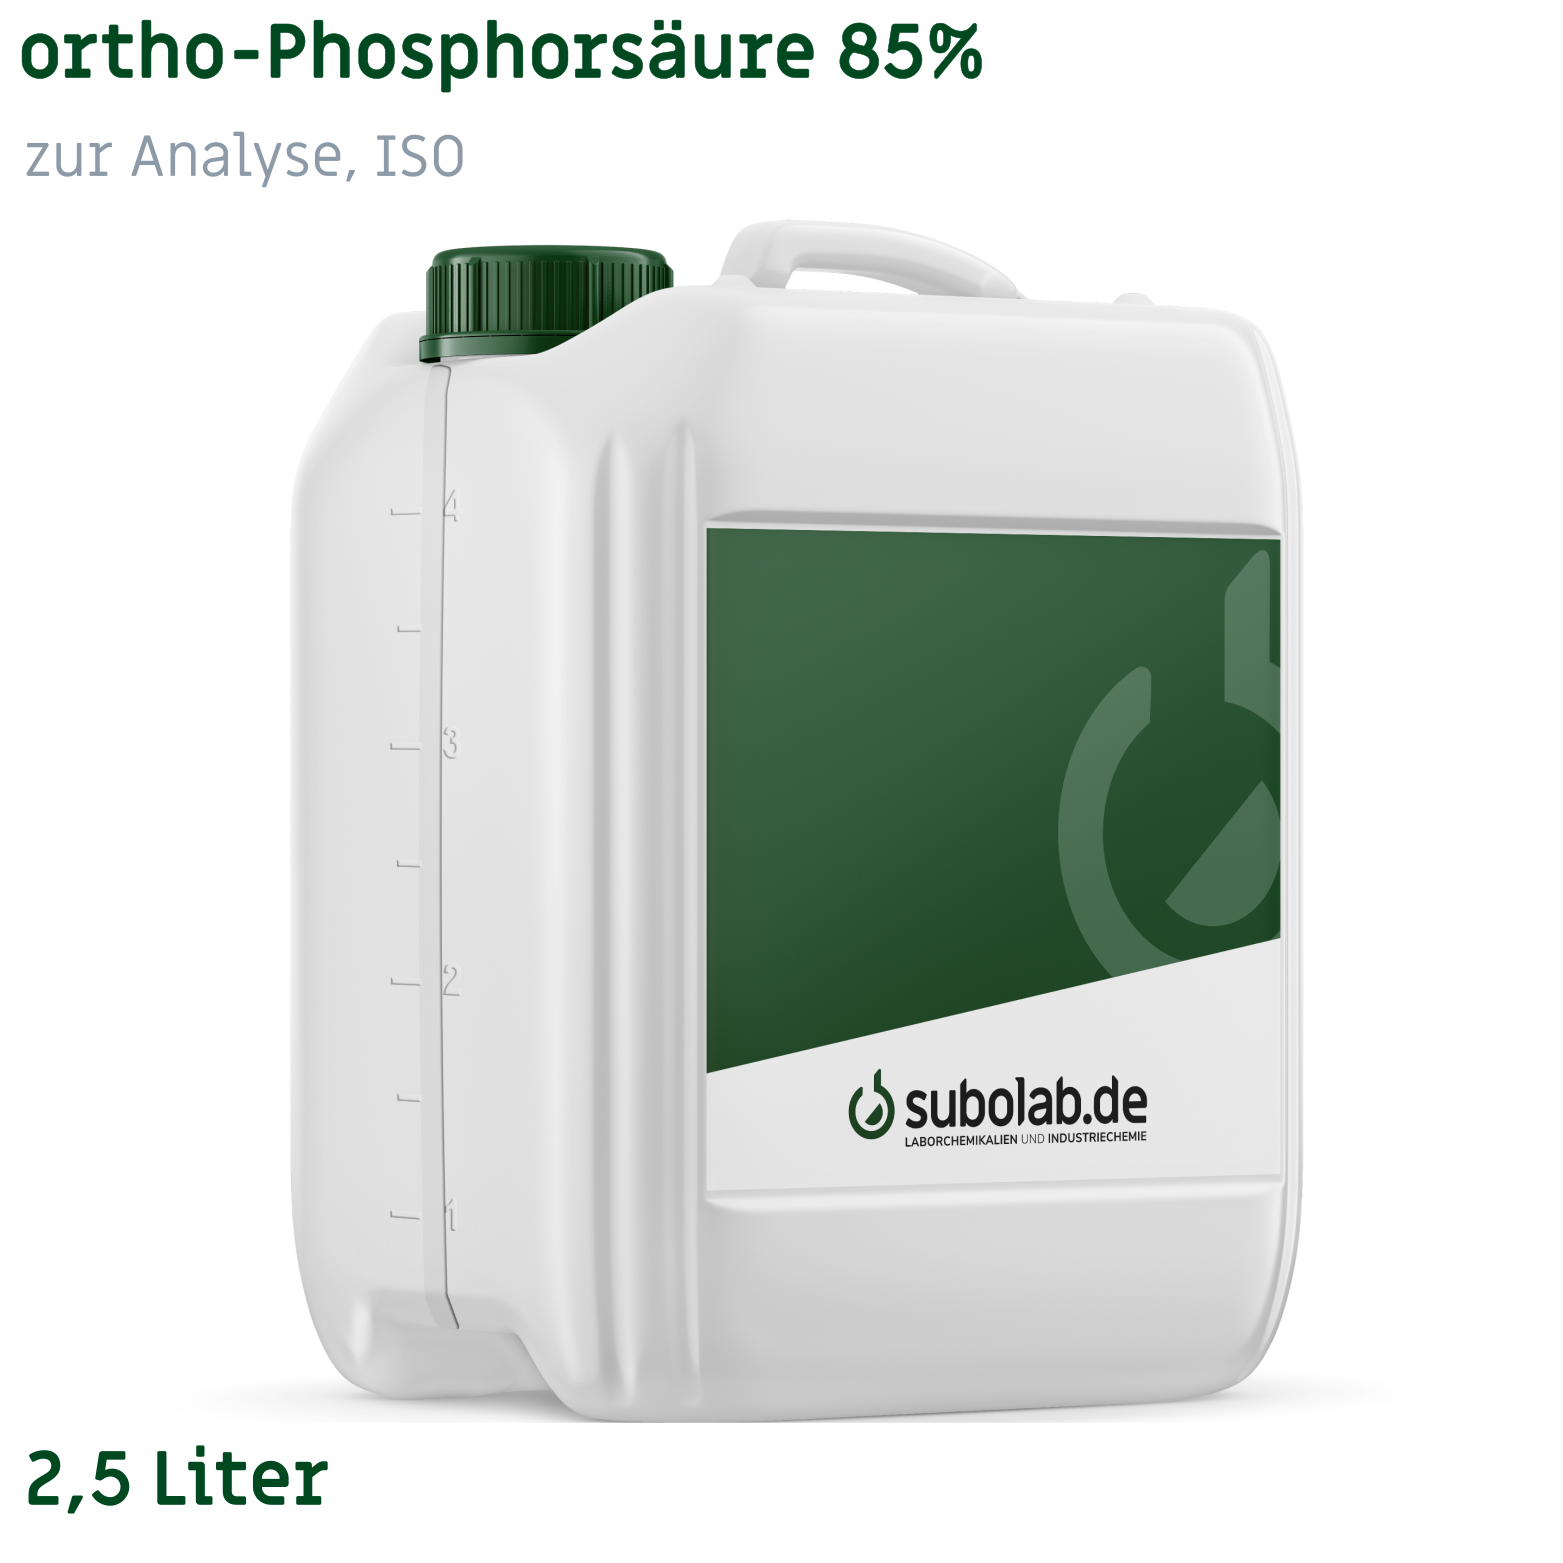 Bild von ortho-Phosphorsäure 85% zur Analyse, ISO (2,5 Liter)